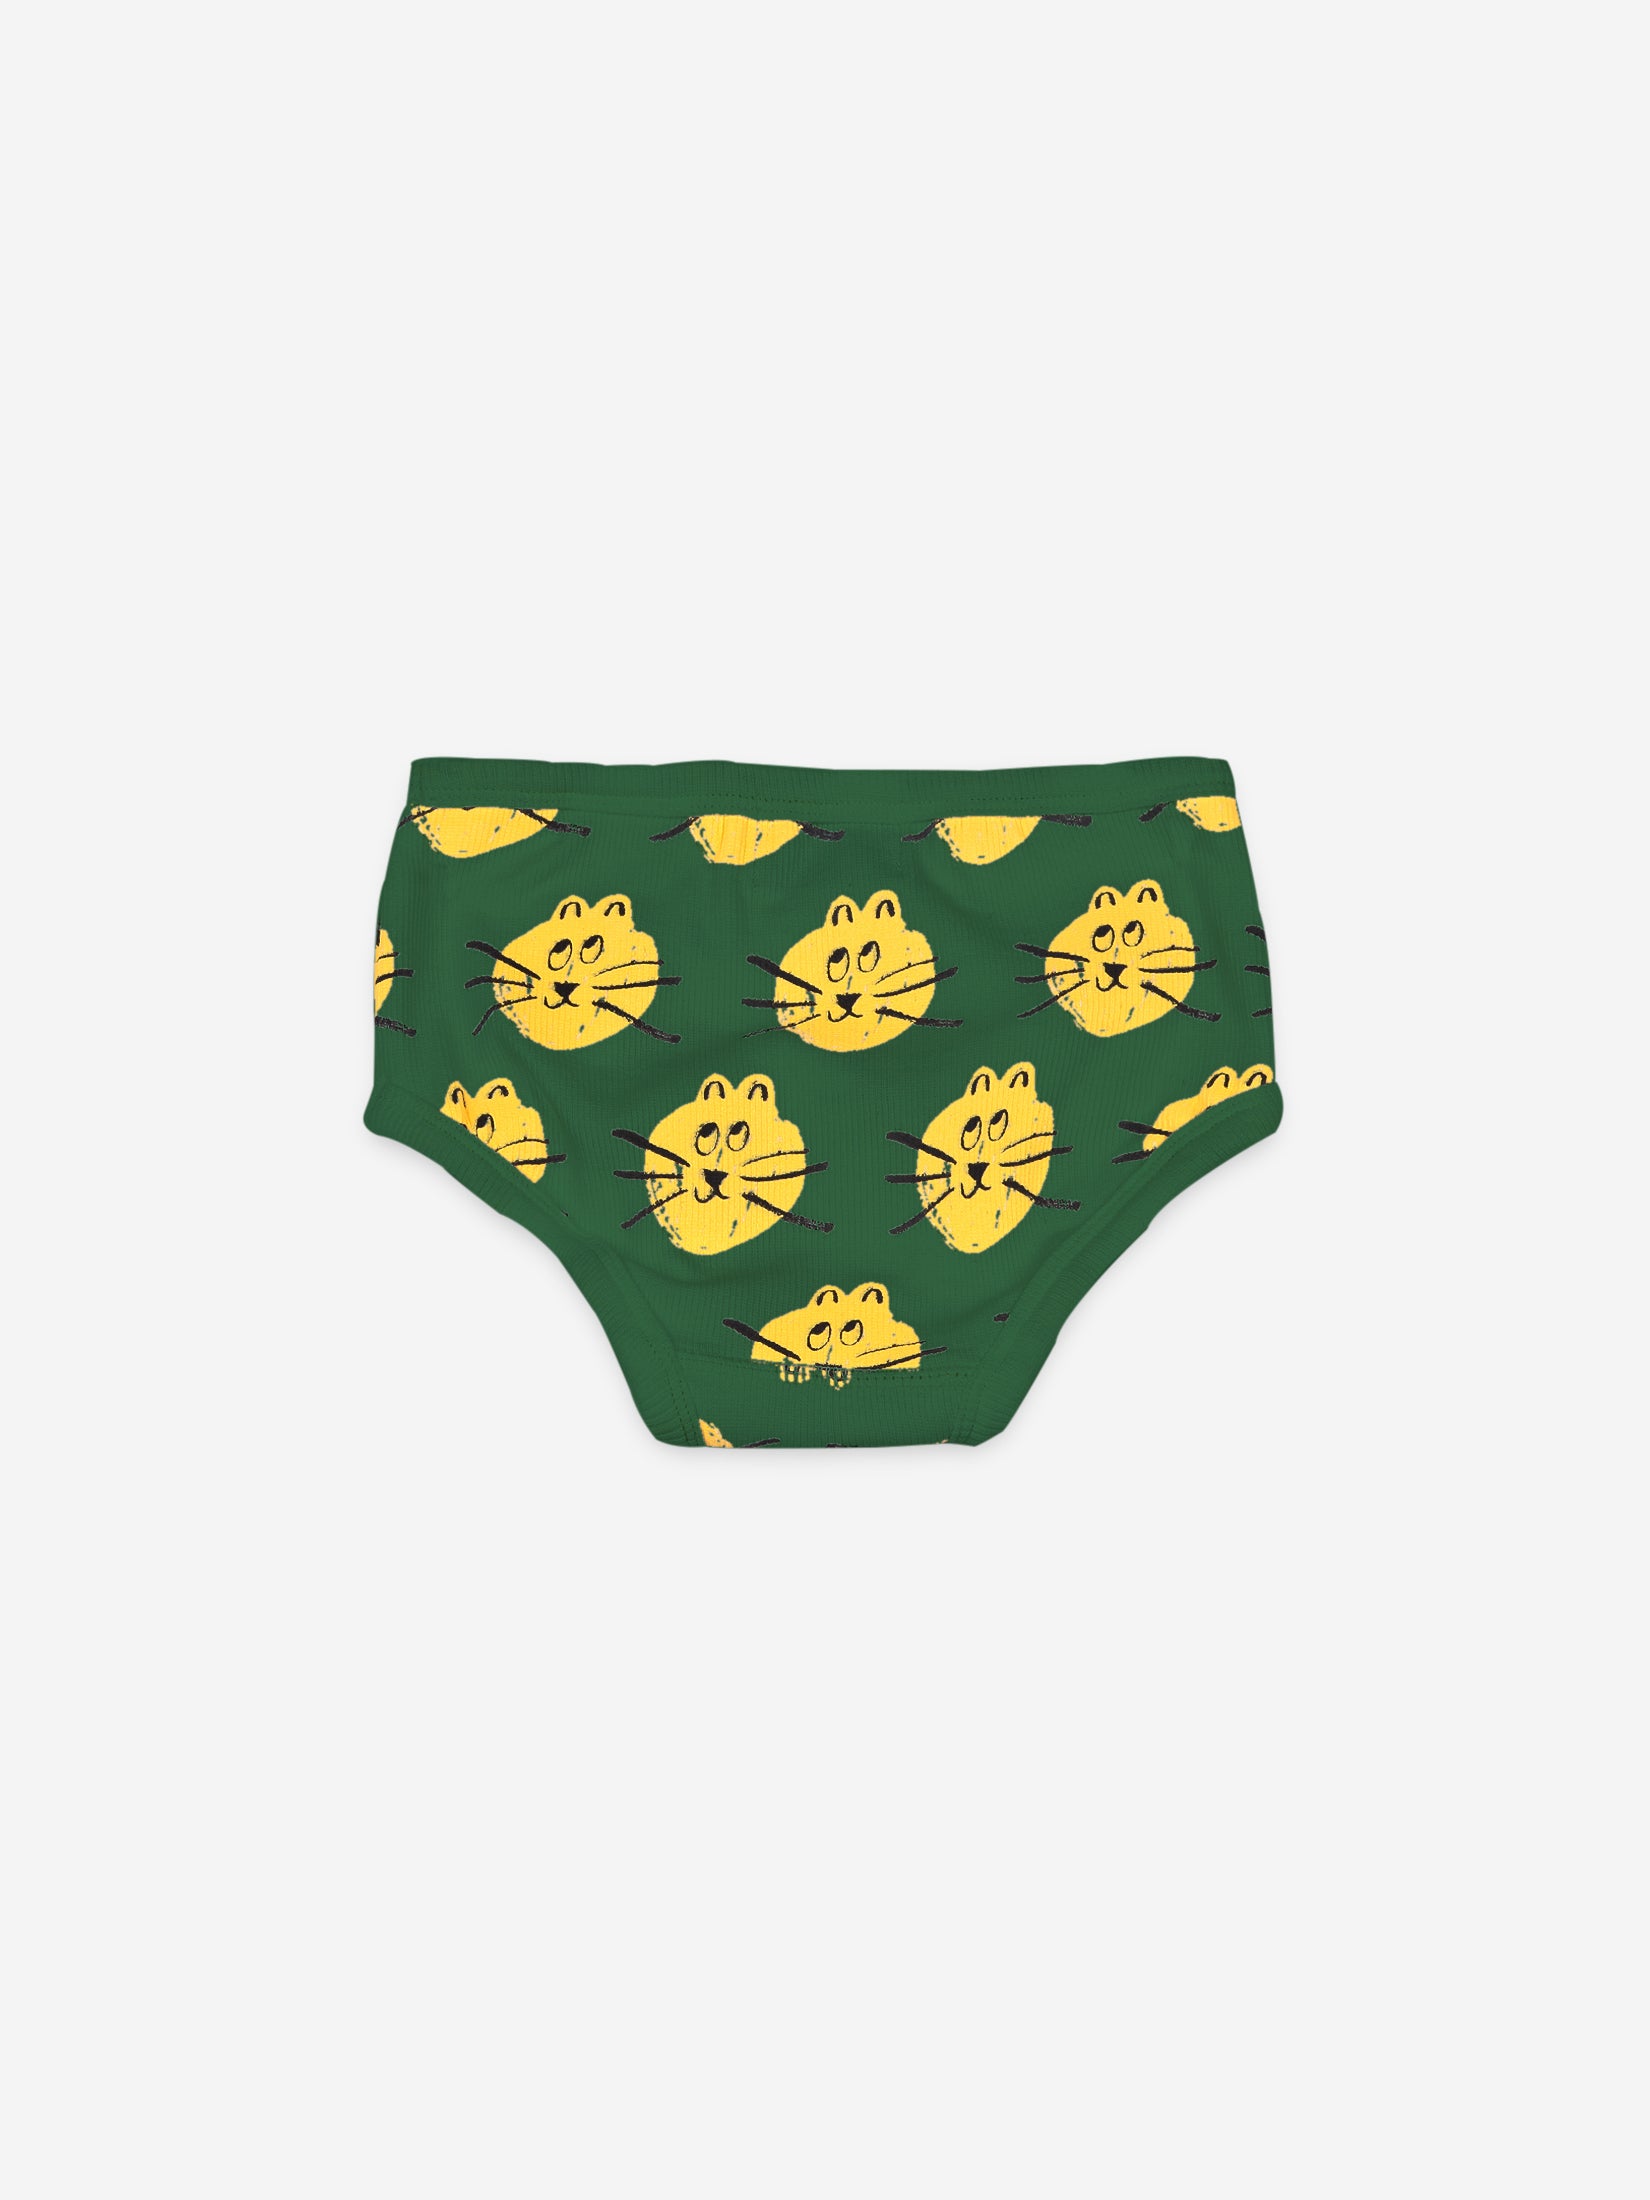 Boys Aqua Green Underwear Set